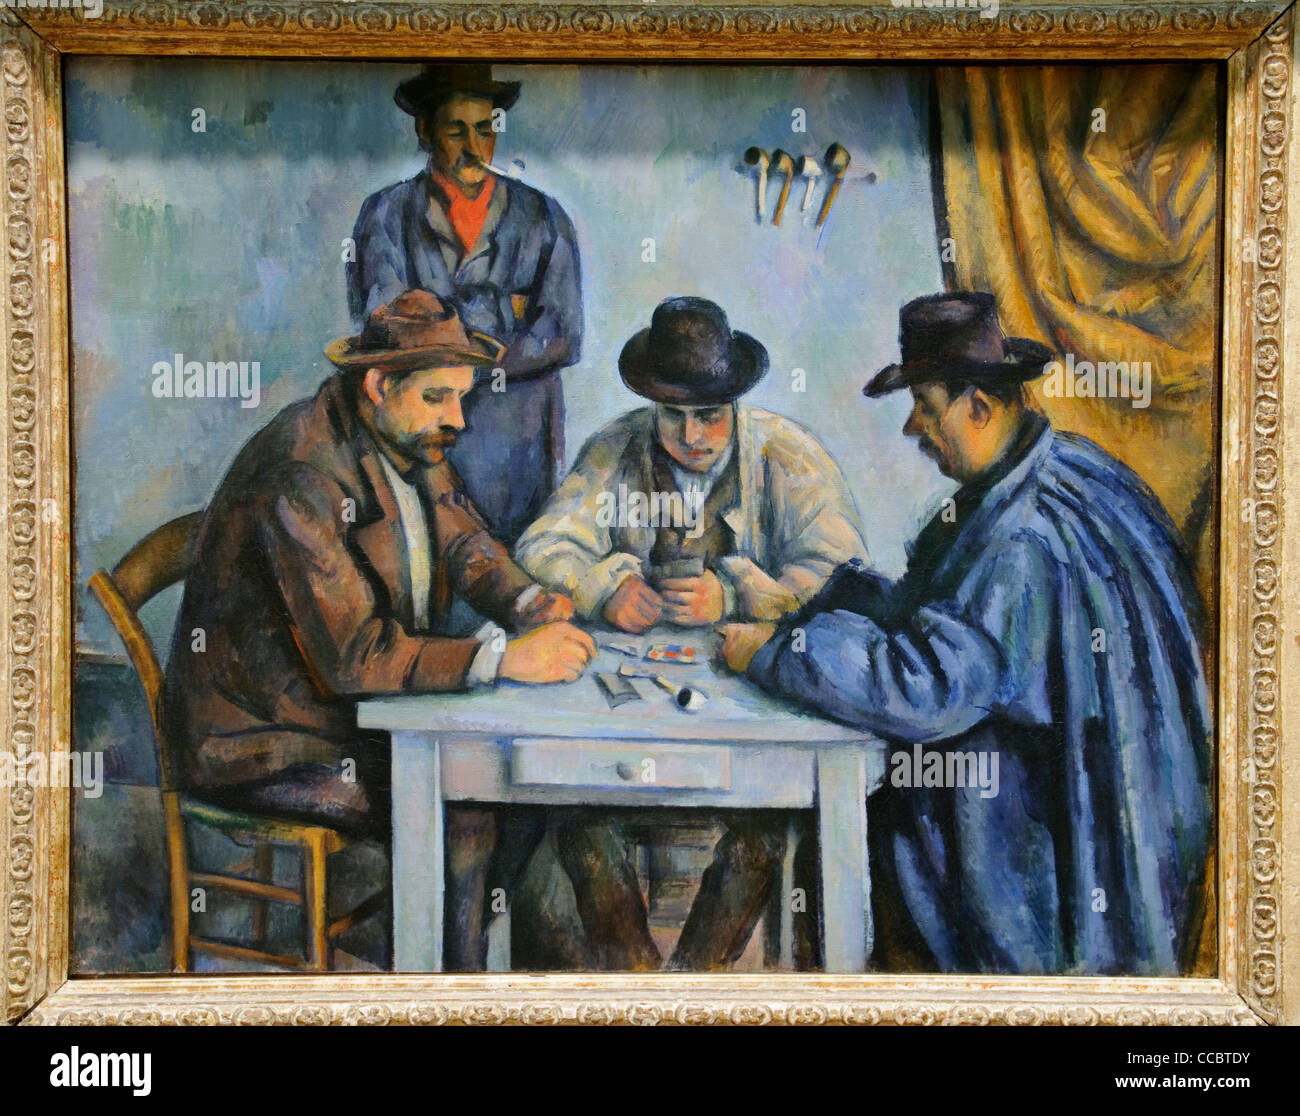 Die Kartenspieler, 1890-92 von Paul Cézanne Stockfotografie - Alamy